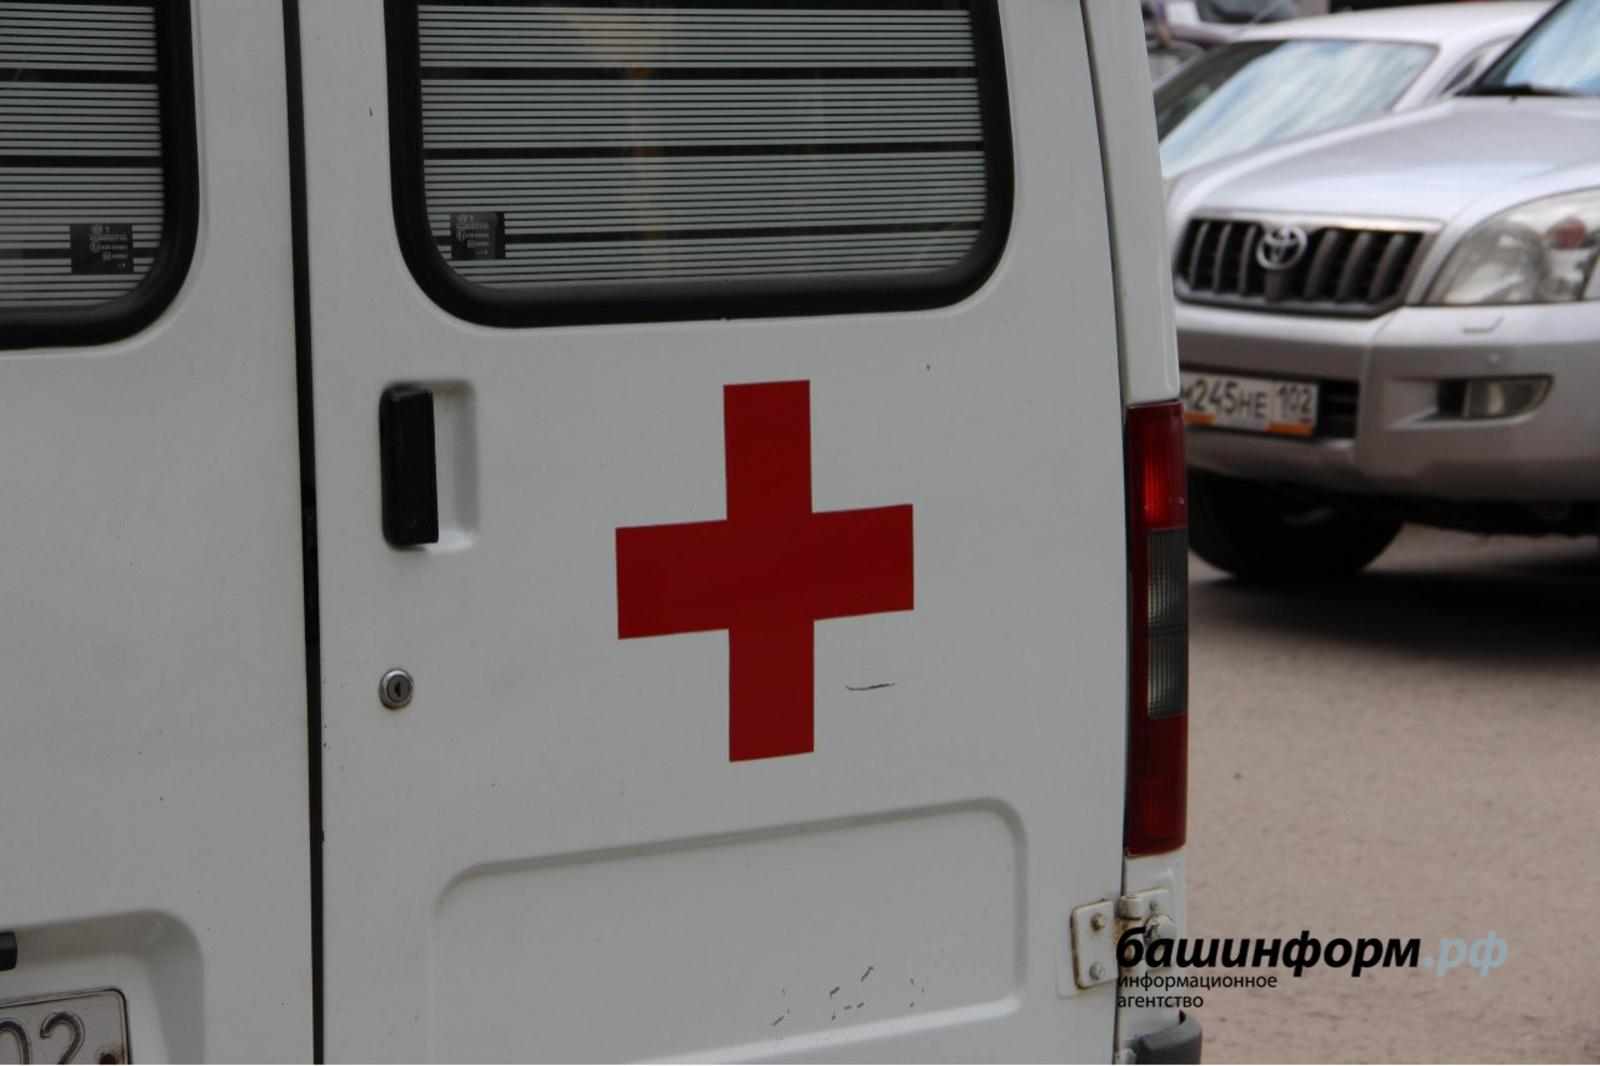 В Башкирии скончался пострадавший при пожаре 11-летний мальчик